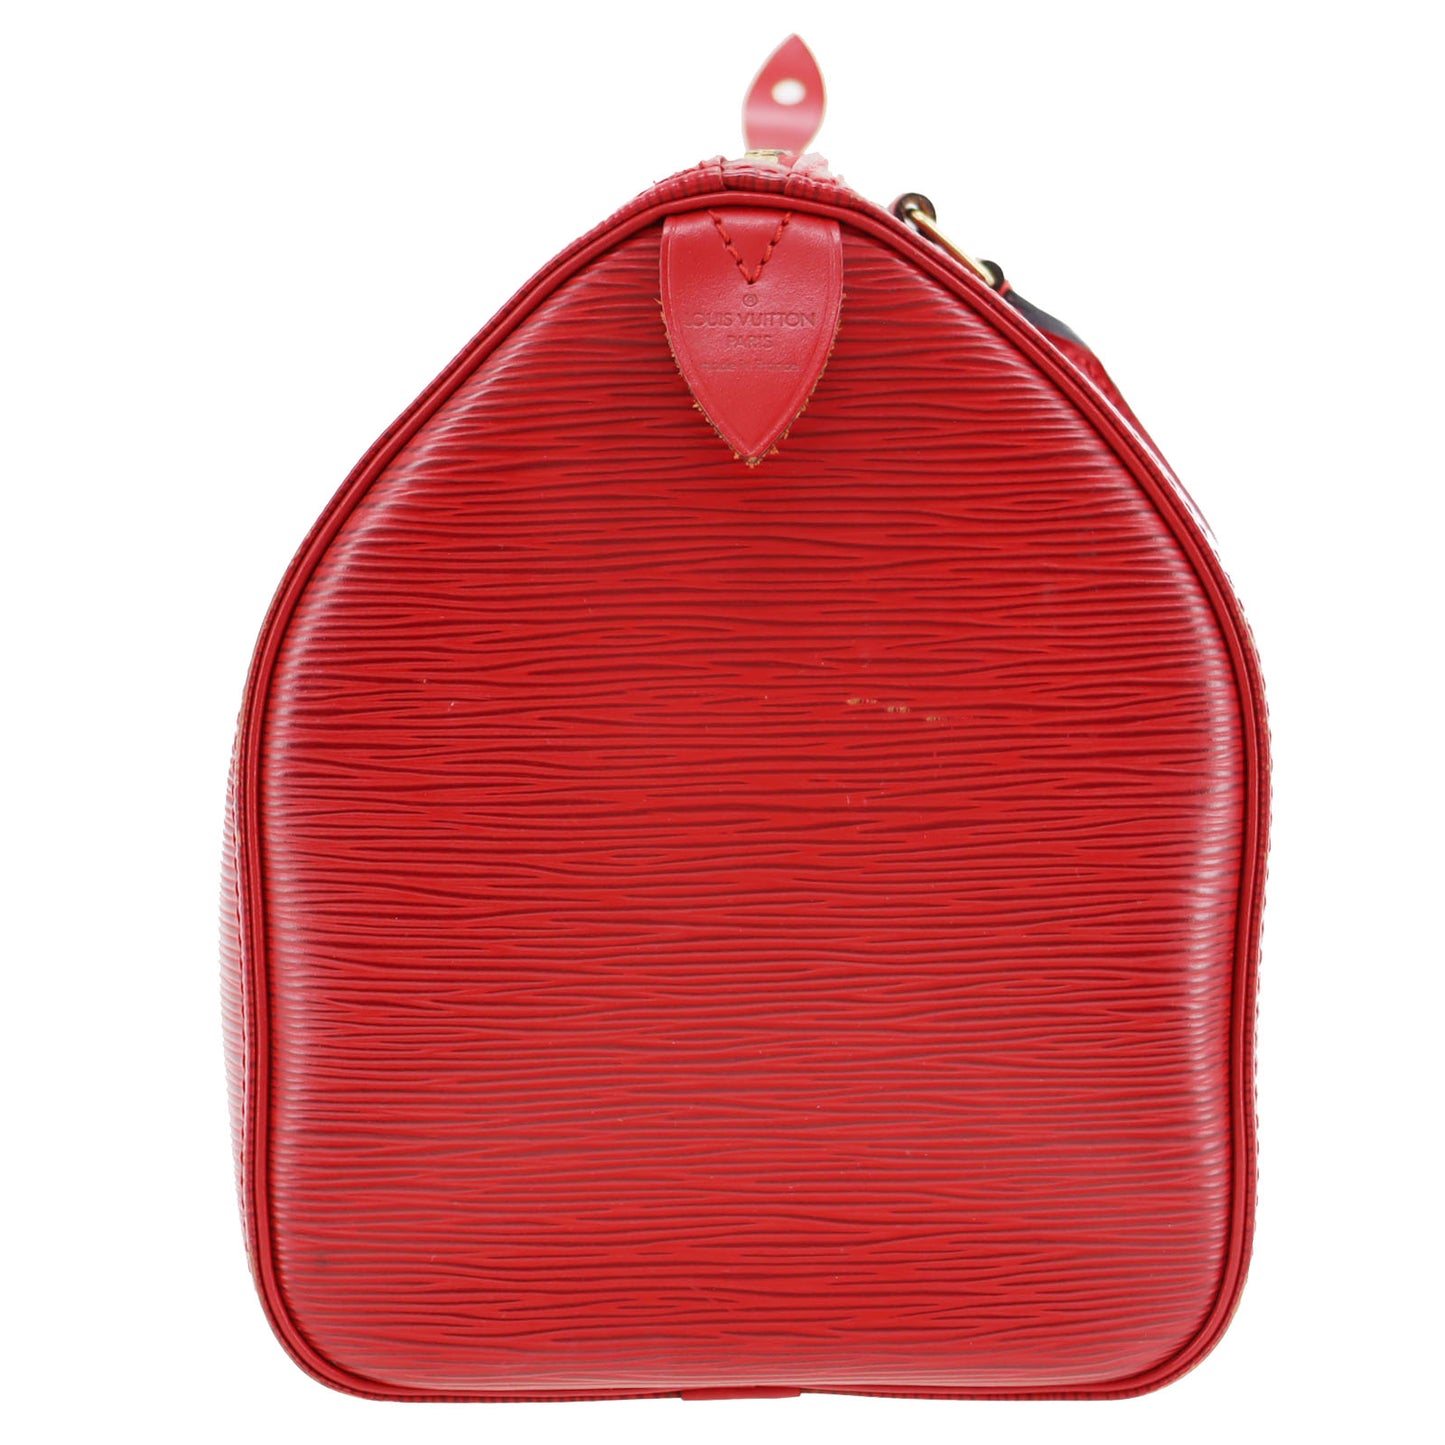 LOUIS VUITTON Speedy 30 Handbag Epi Leather Red M43007 #AG677